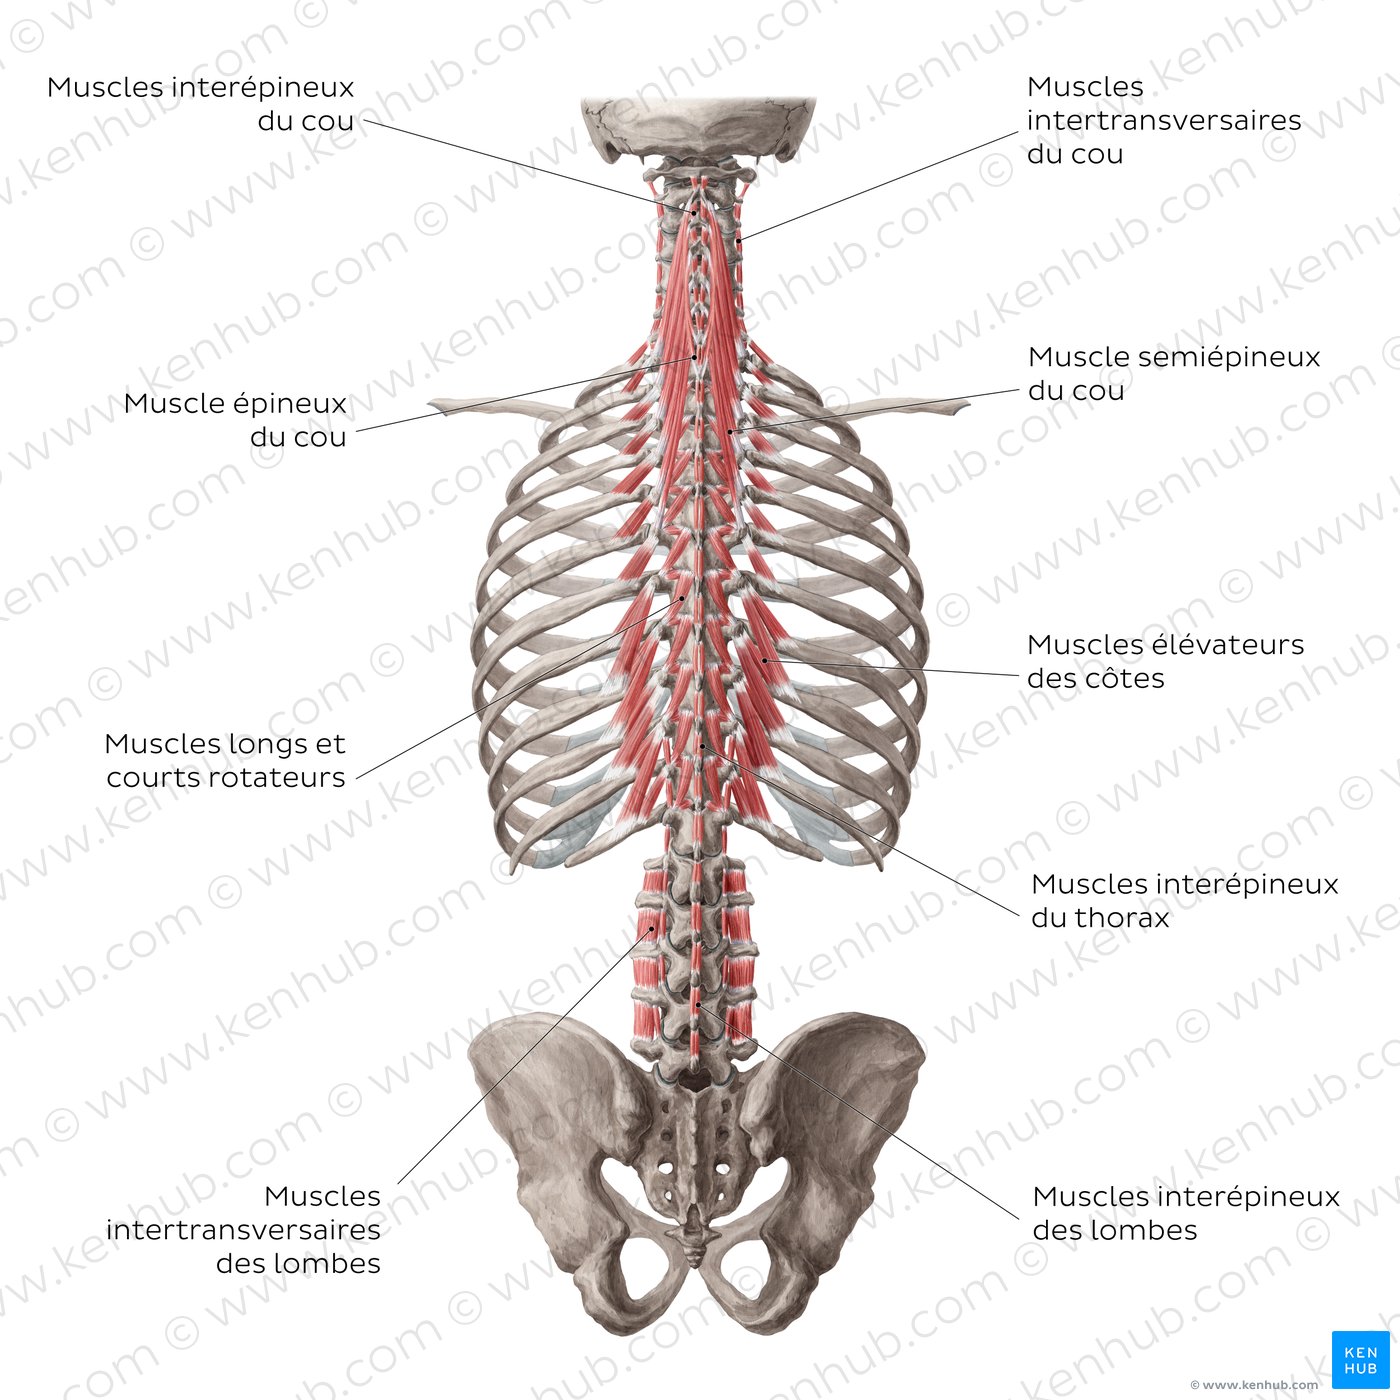 Les couches profondes et les plus profondes des muscles profonds du dos